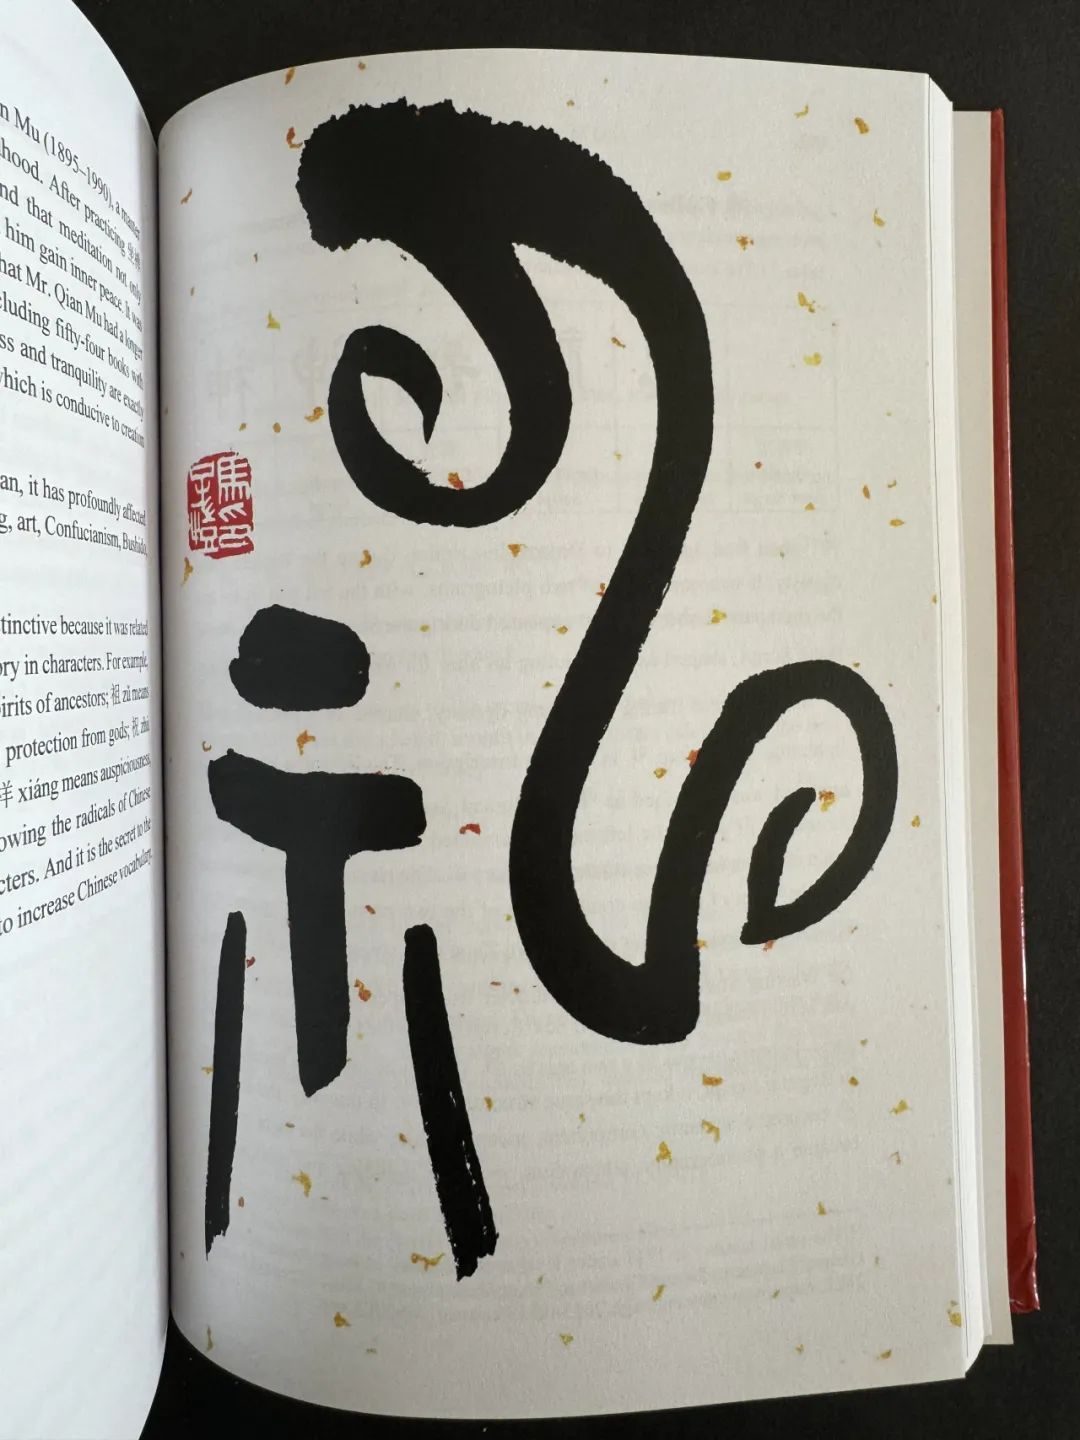 热爱汉字的老外有福了——由马子恺倡议并精心创作图版作品，《从汉字中感悟中国智慧》英文原版在剑桥刊行，面向欧美地区发售